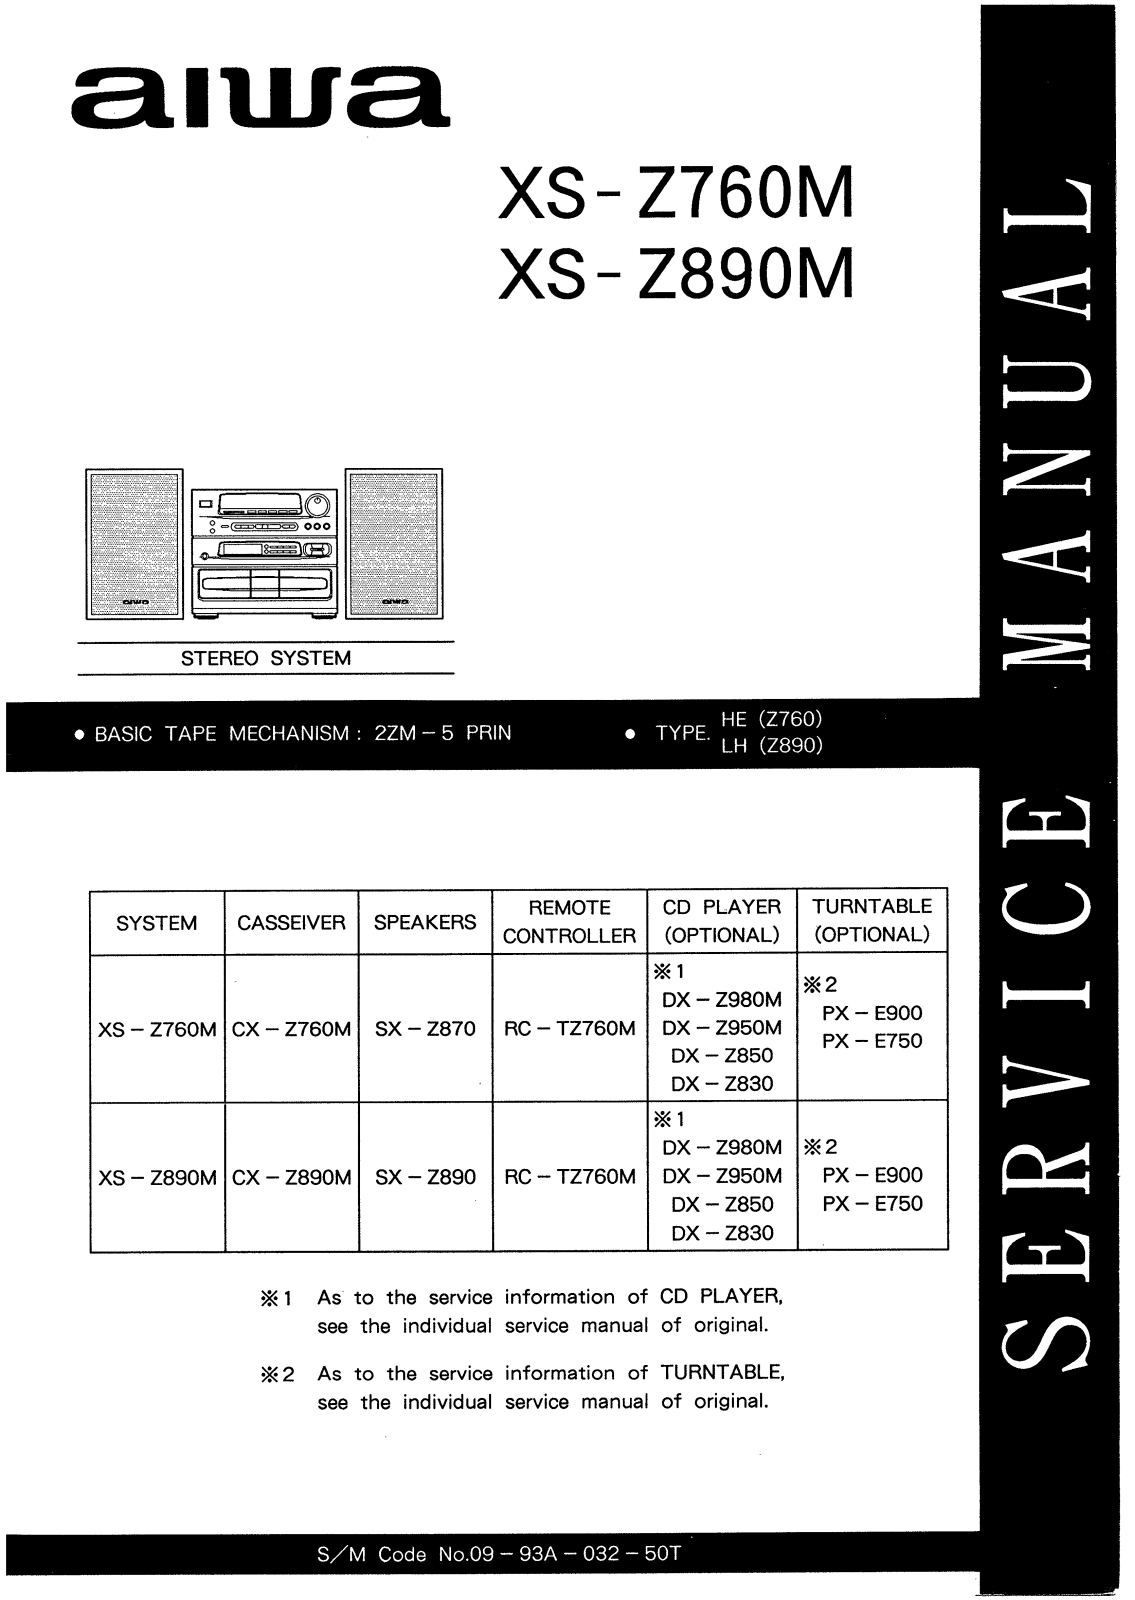 Aiwa XS-Z760M, XS-Z890M Service Manual